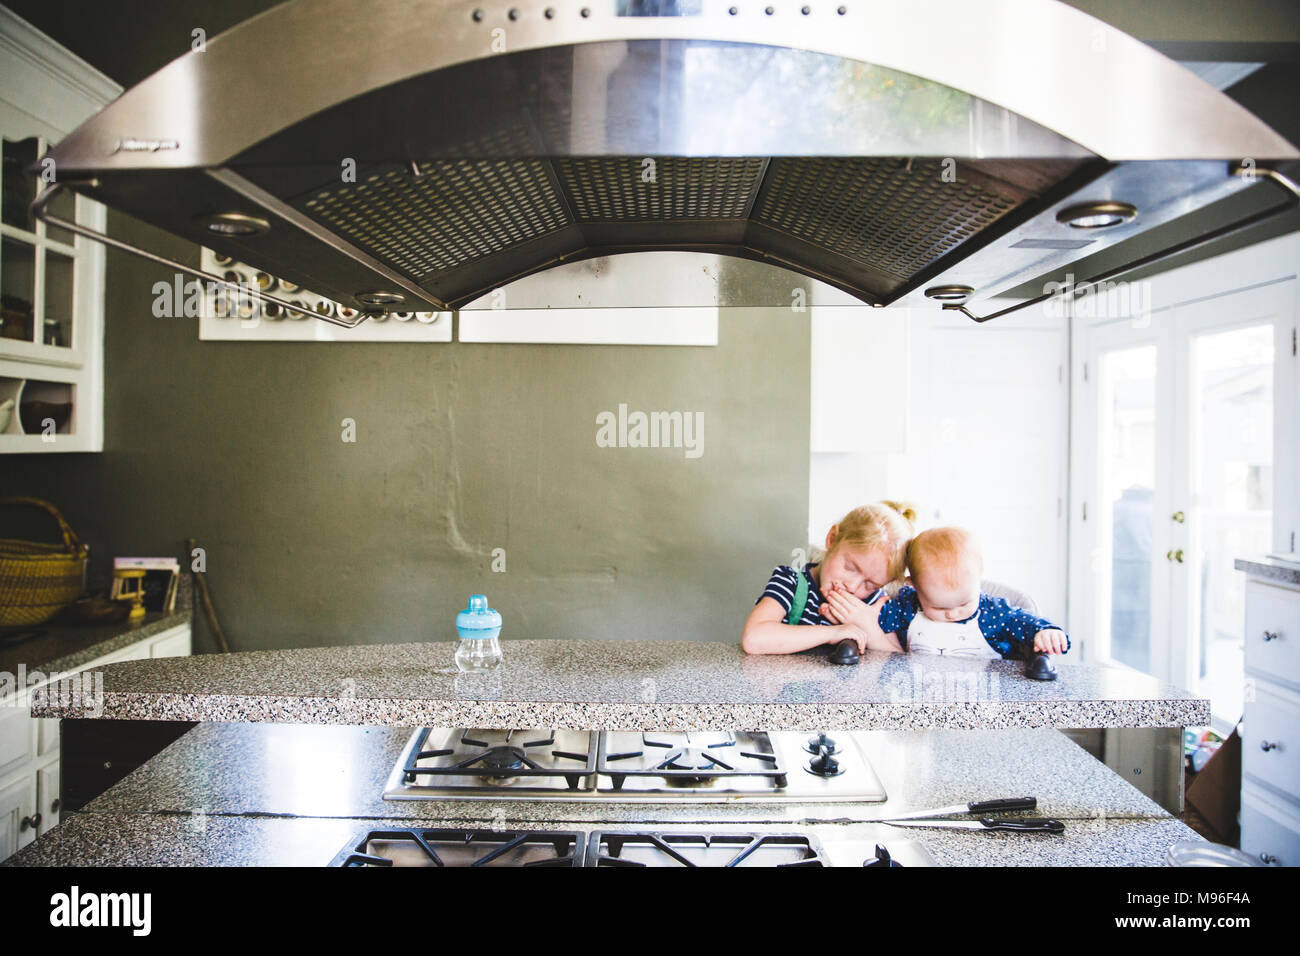 La ragazza e il bambino seduto al banco di cucina Foto Stock